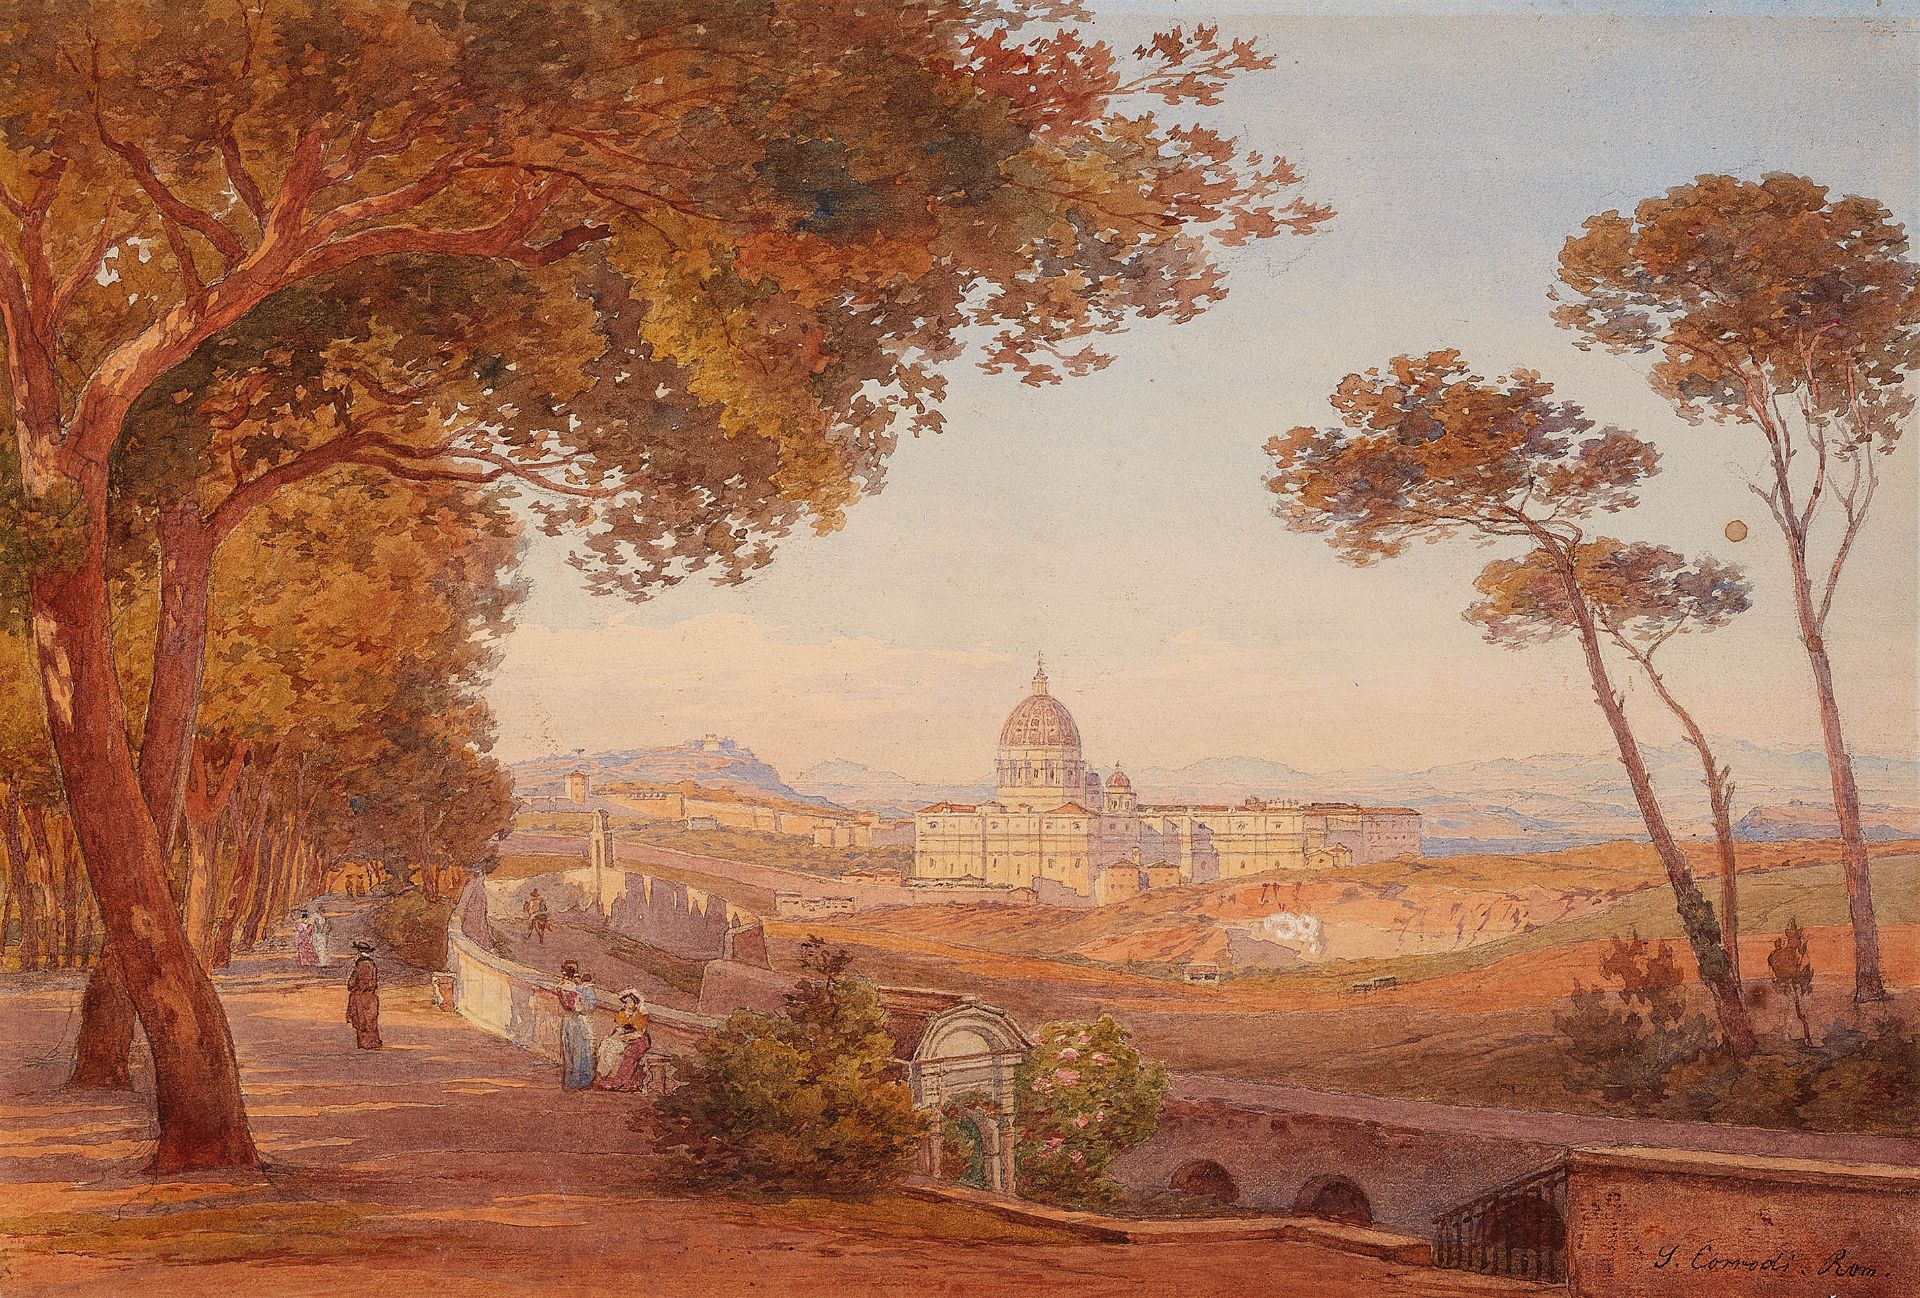 Salomon Corrodi, View of Rome